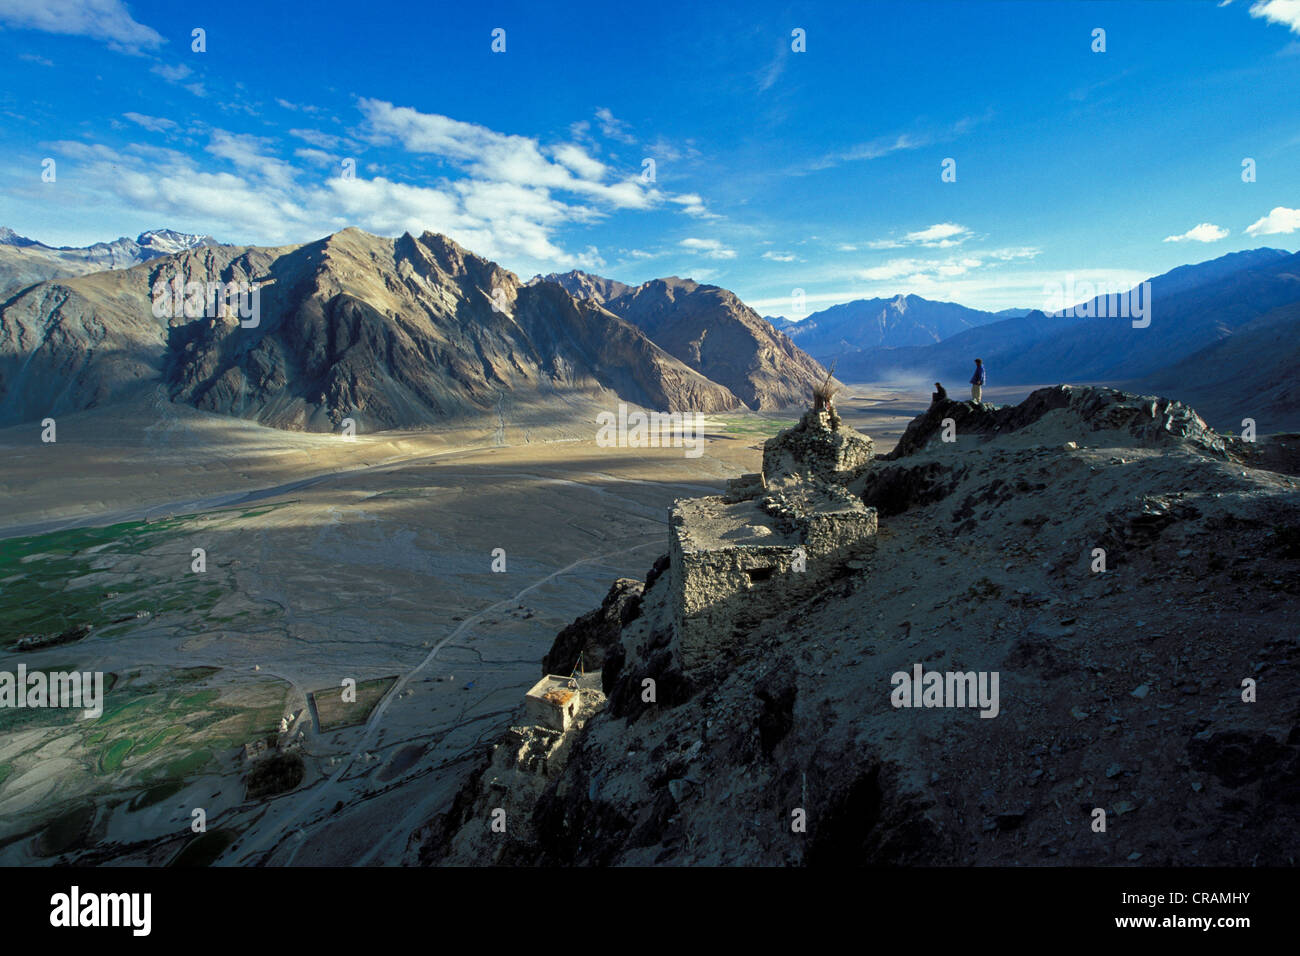 La vallée du Zanskar, Ladakh, Zanskar, Tongde, Himalaya indien, le Jammu-et-Cachemire, l'Inde du nord, Inde, Asie Banque D'Images